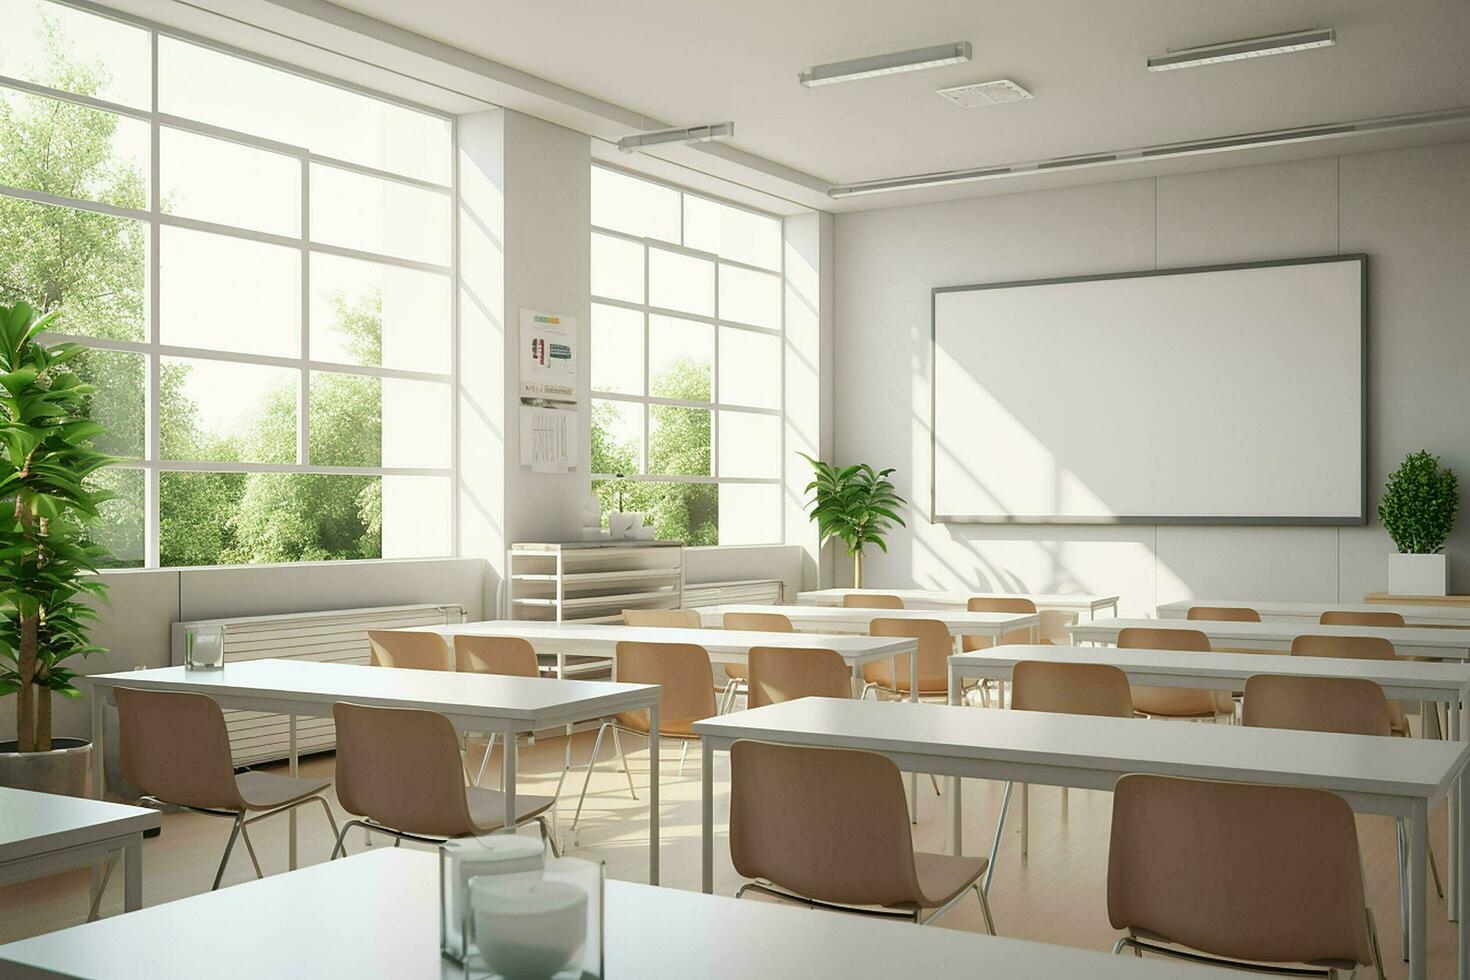 Innere von modern Klassenzimmer mit Weiß Wände, Beton Boden, Reihen von Grün Stühle und leeren Tafel. 3d Wiedergabe. ai generiert. Profi Foto